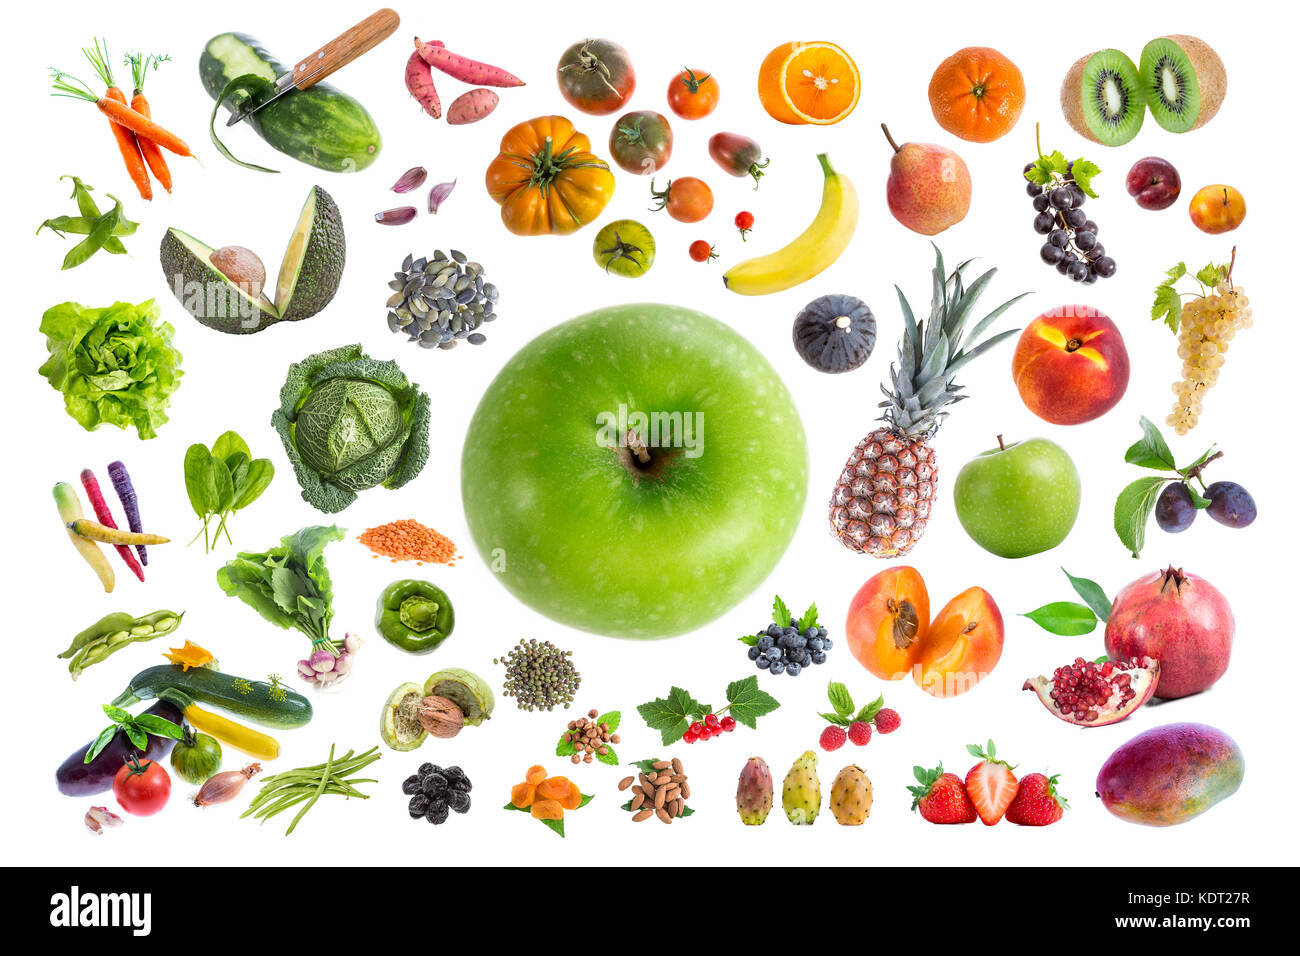 Konzept der gesunden Ernährung, verschiedene Früchte und Gemüse fünf ein Tag auf Mitte Hintergrund mit einem grünen Apfel in der Mitte Essen Stockfoto